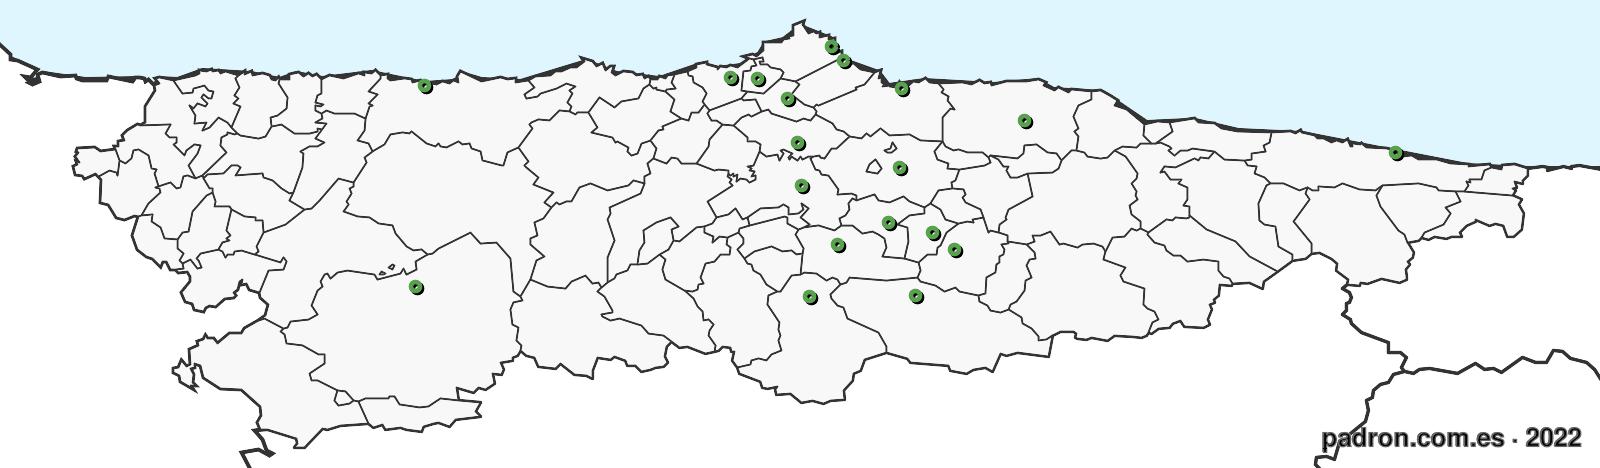 guyaneses en asturias.